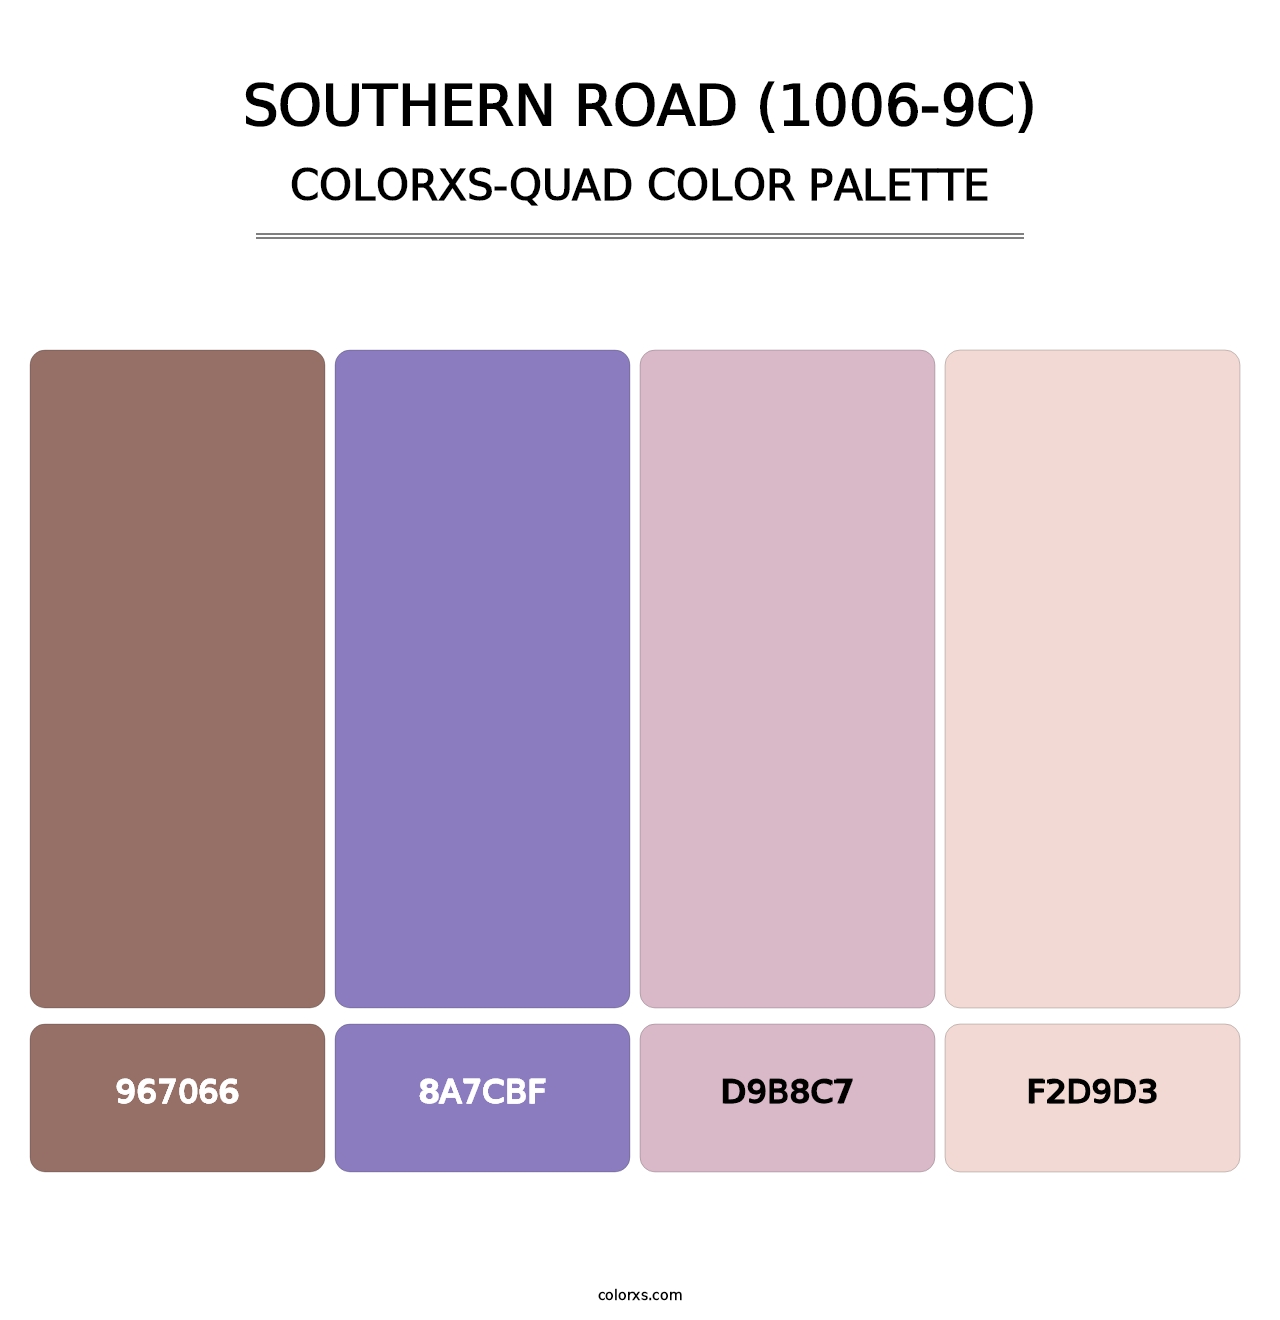 Southern Road (1006-9C) - Colorxs Quad Palette